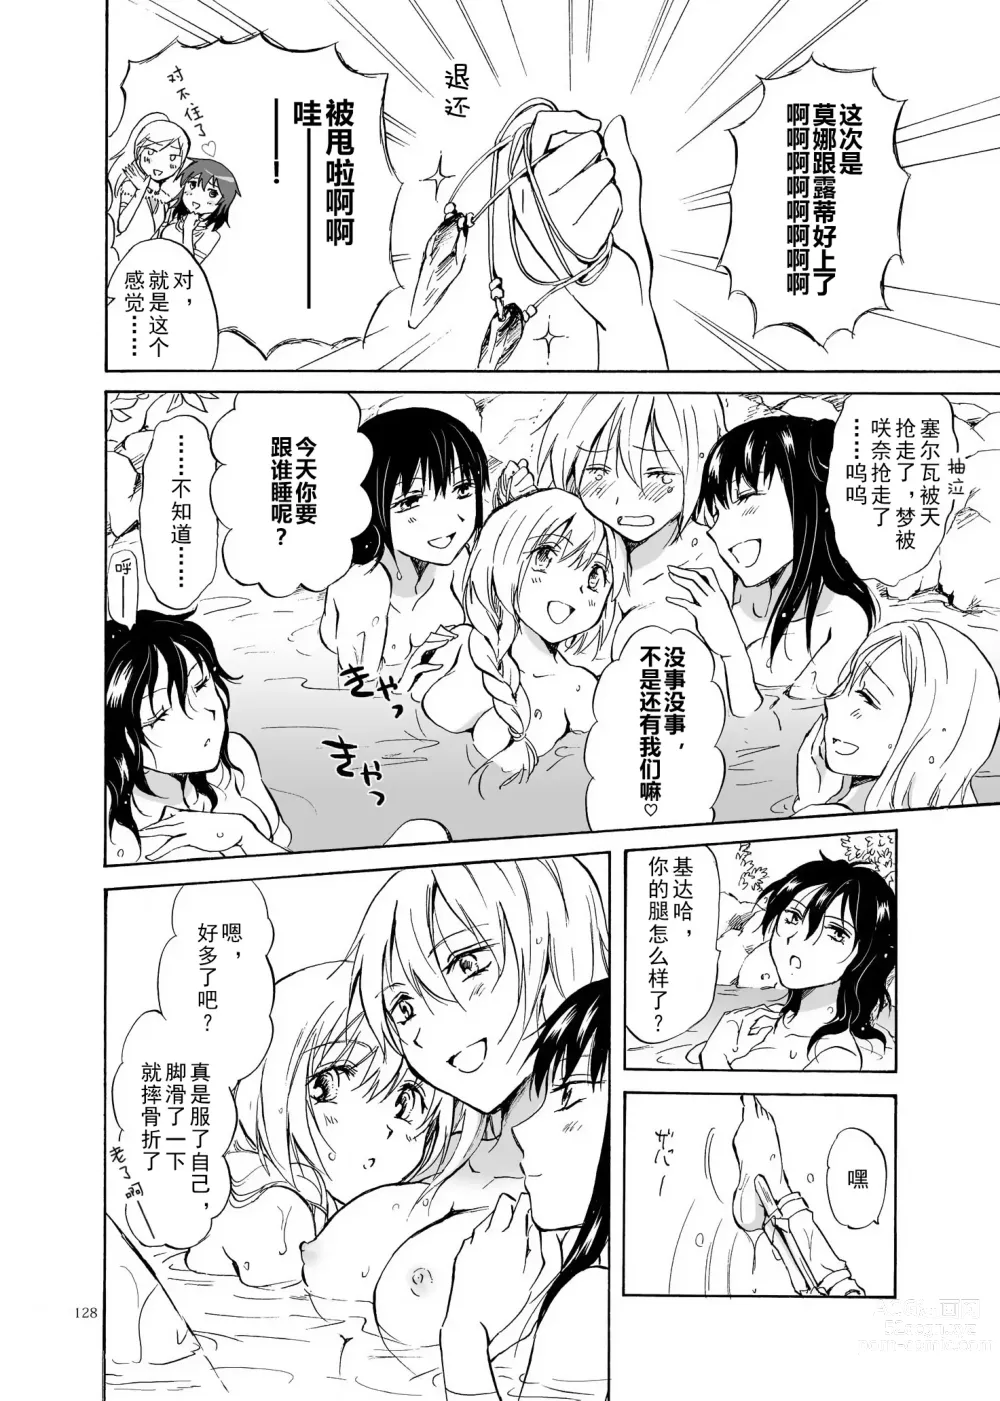 Page 128 of doujinshi EARTH GIRLS